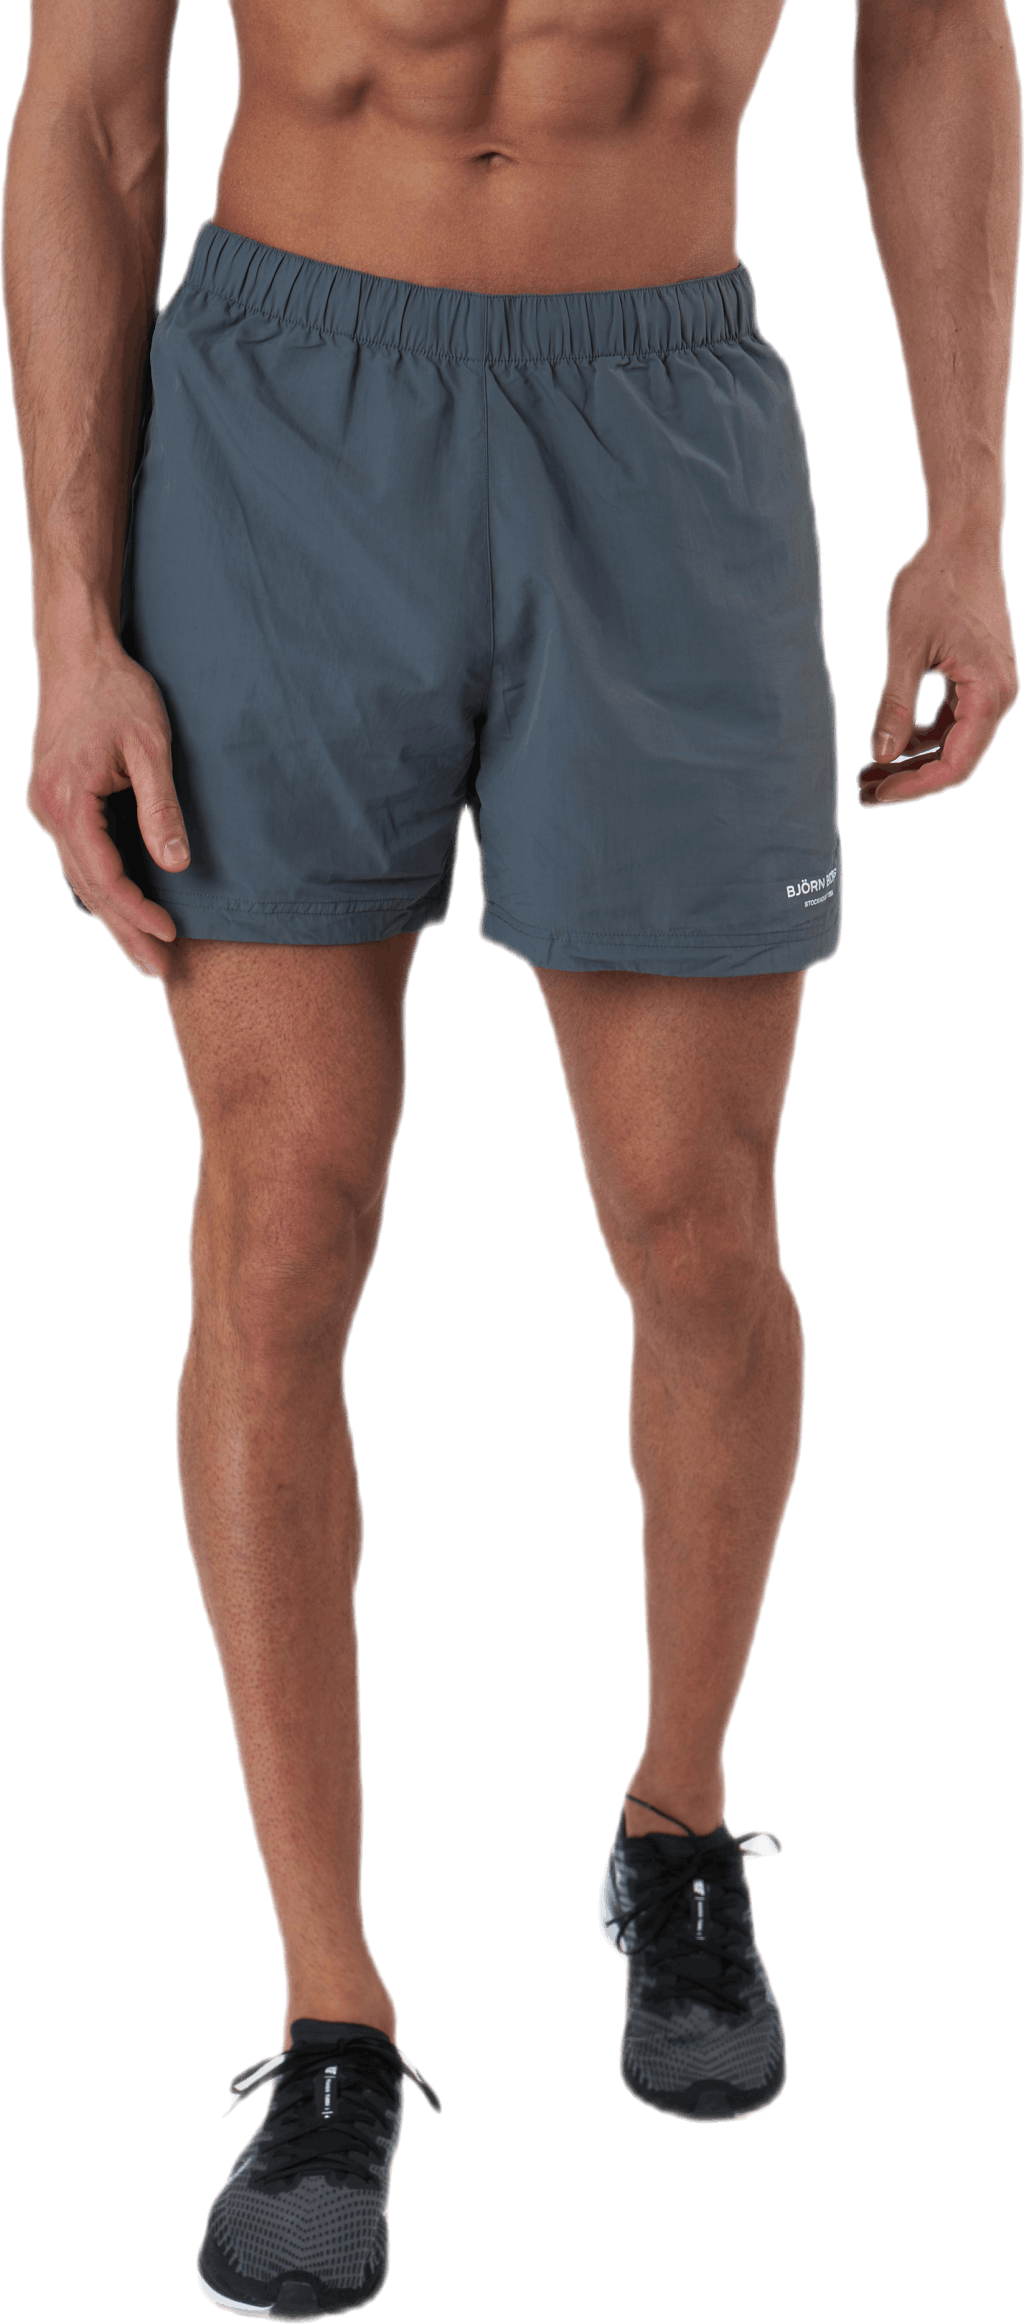 Sthlm Training Shorts Grey